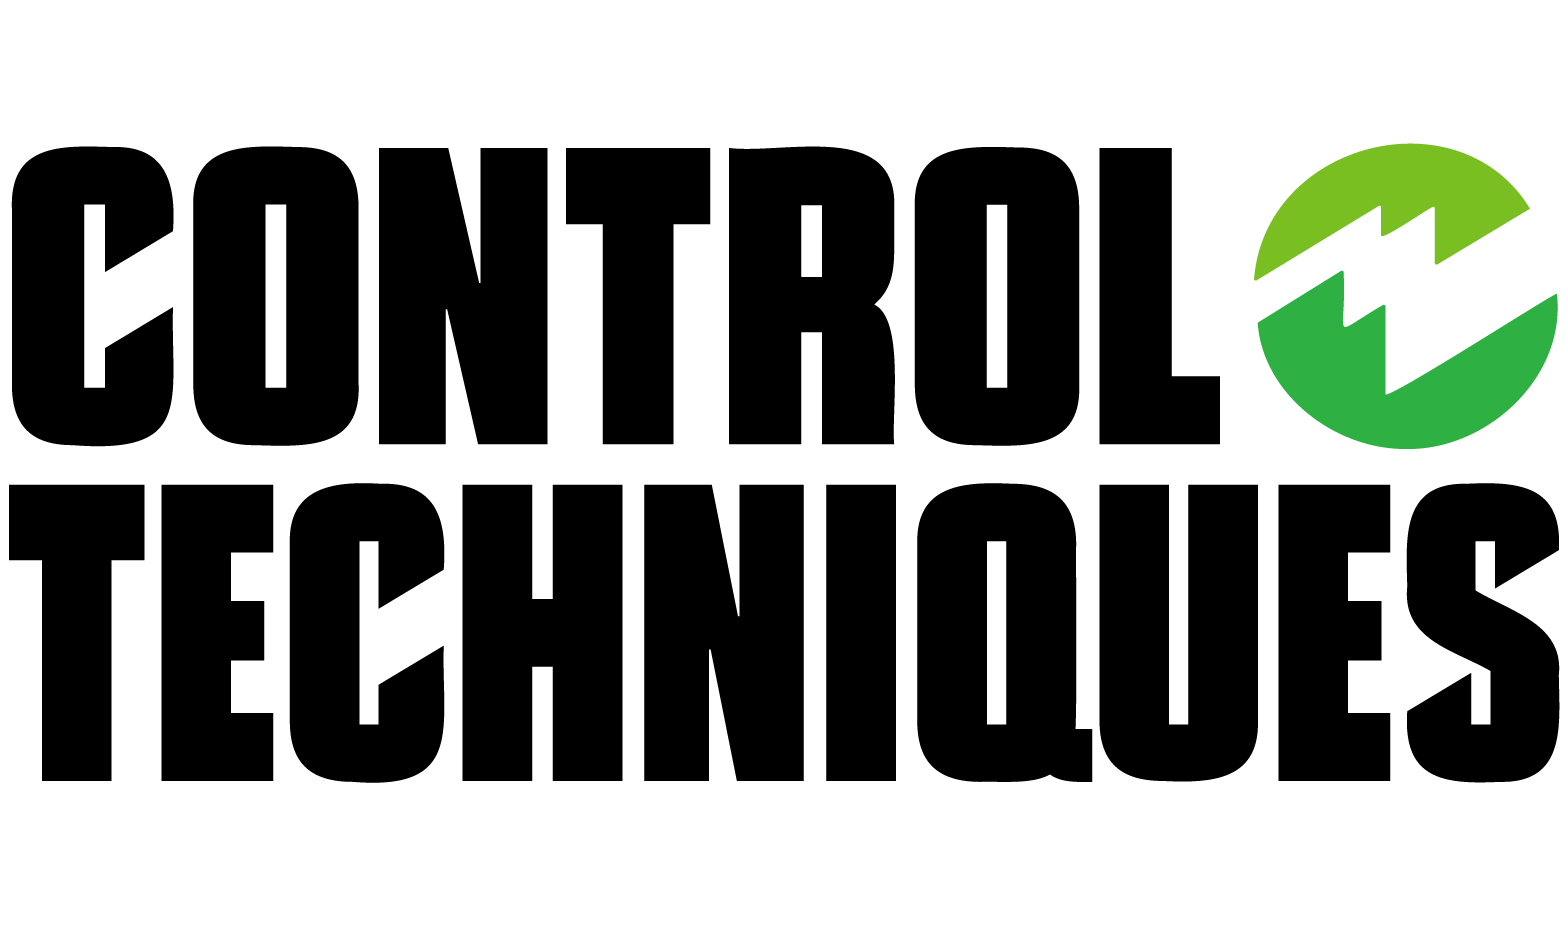 Nidec Control Techniques